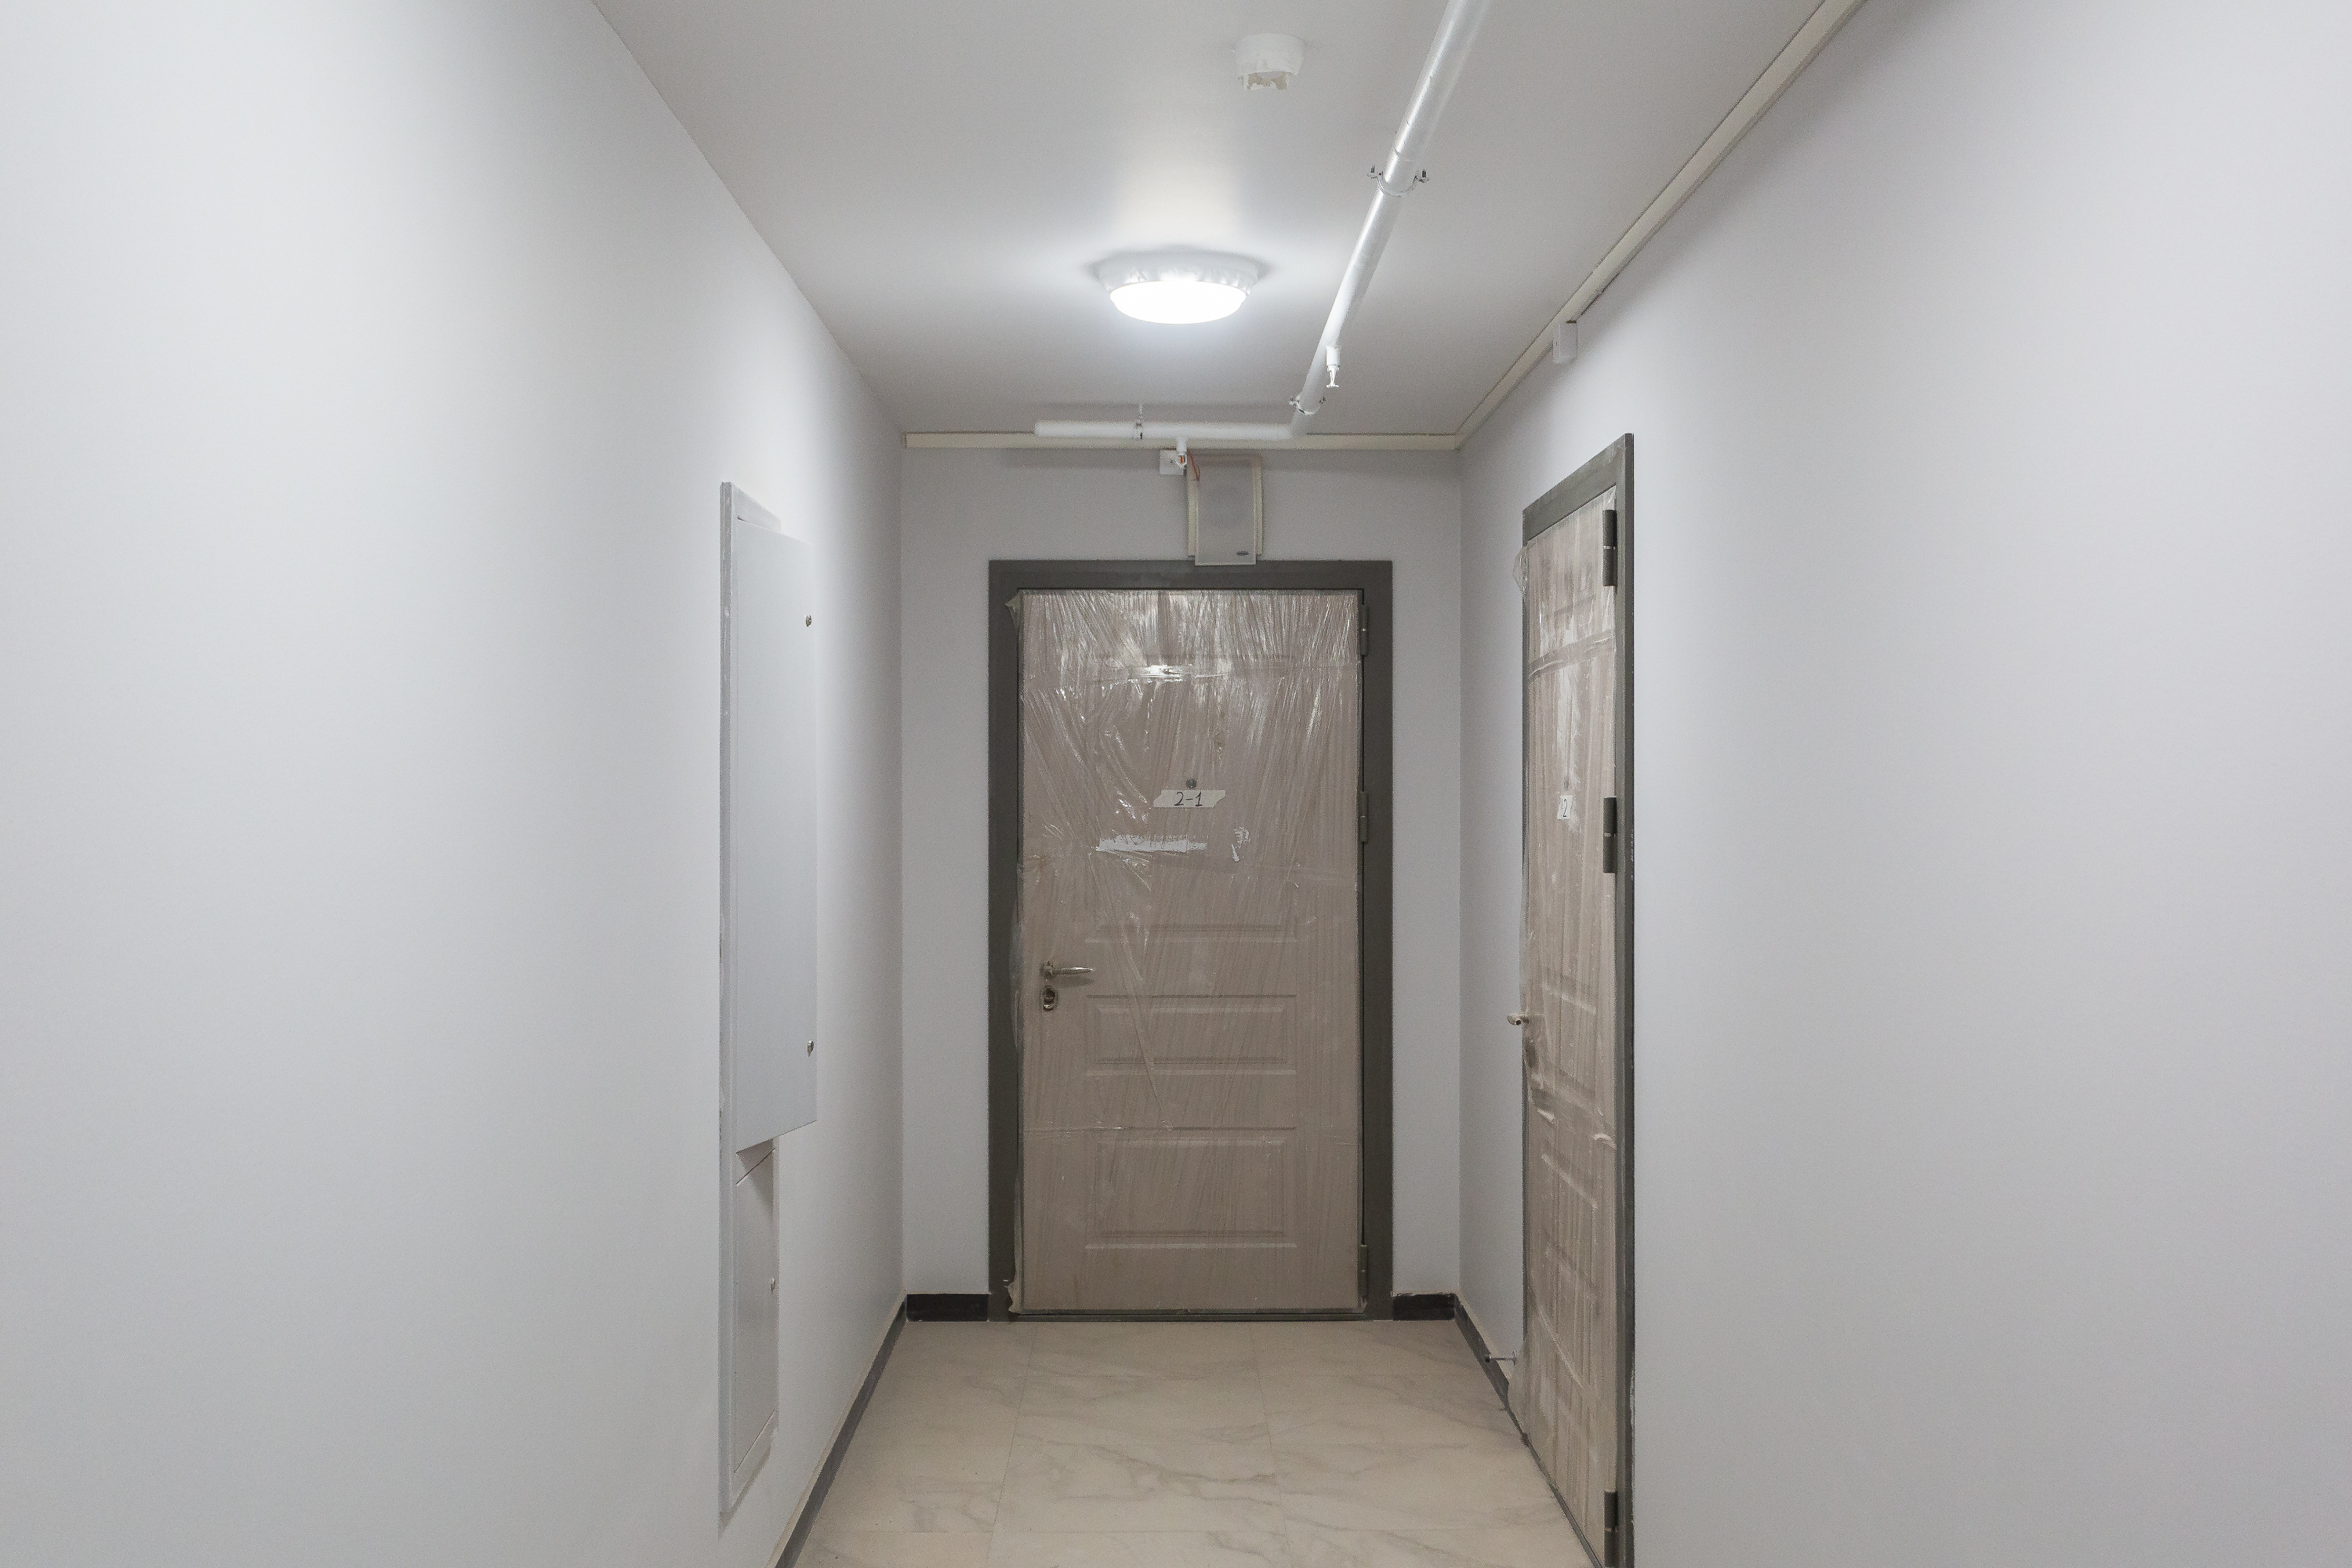 Надежные и стильные сейф-двери во всех квартирах одинаковые, чтобы не нарушать концепцию проекта. Пока дом не сдали они в пленке, чтобы не повредились и не загрязнились